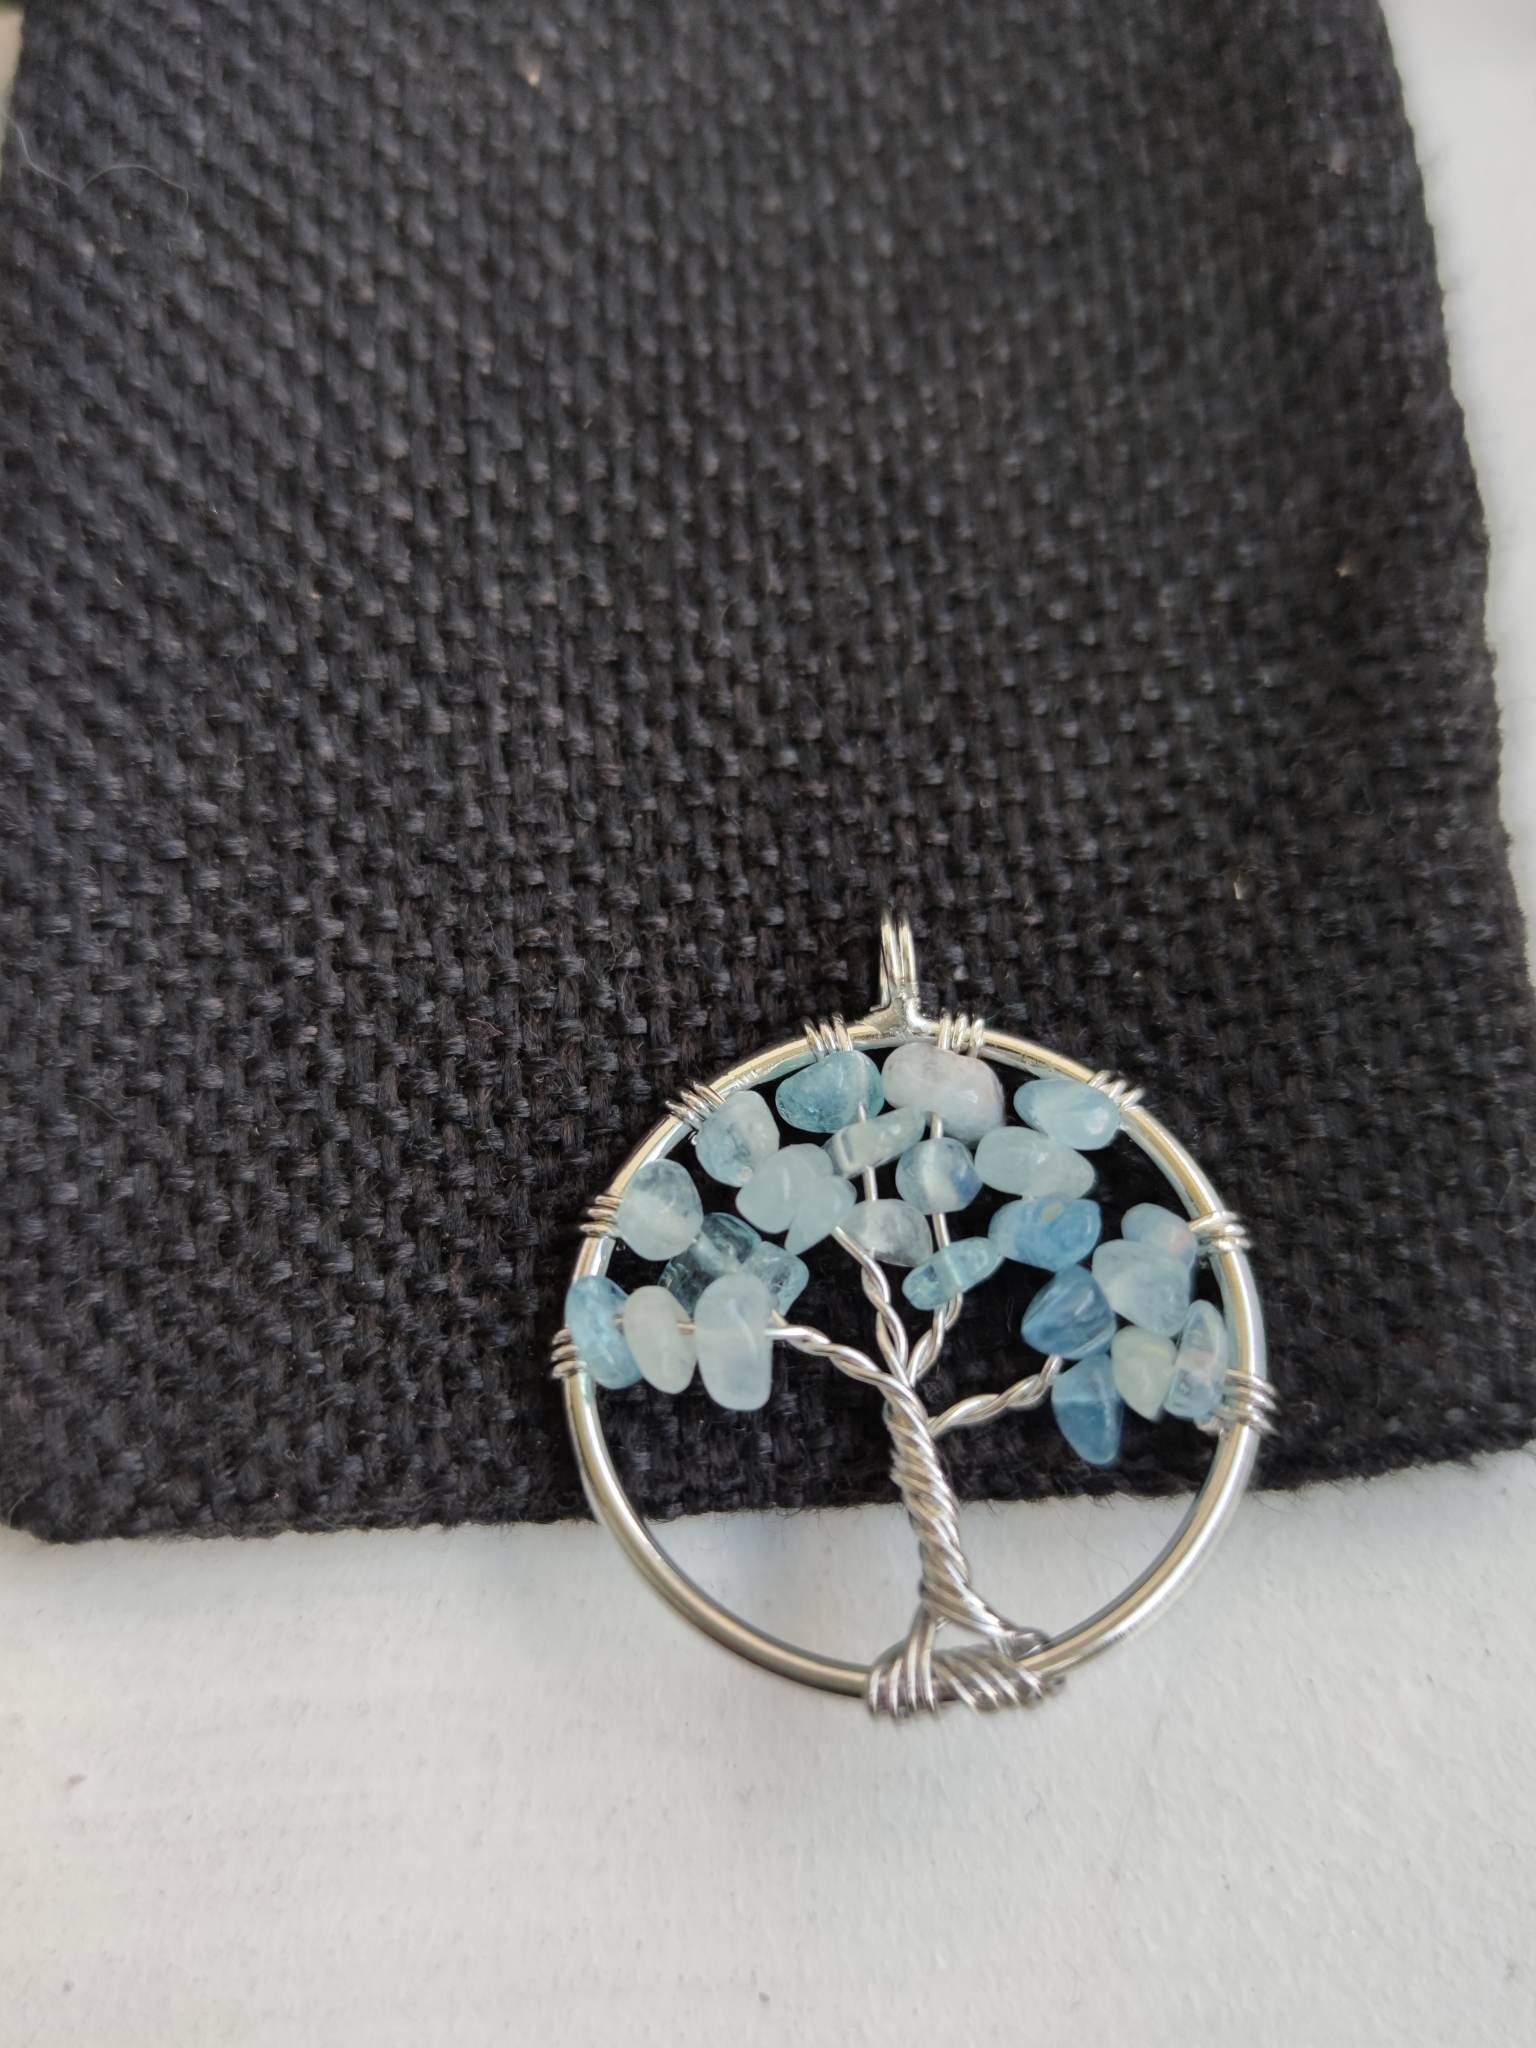 Talisman pro posílení intuice - modrý chalcedonový strom života medailon